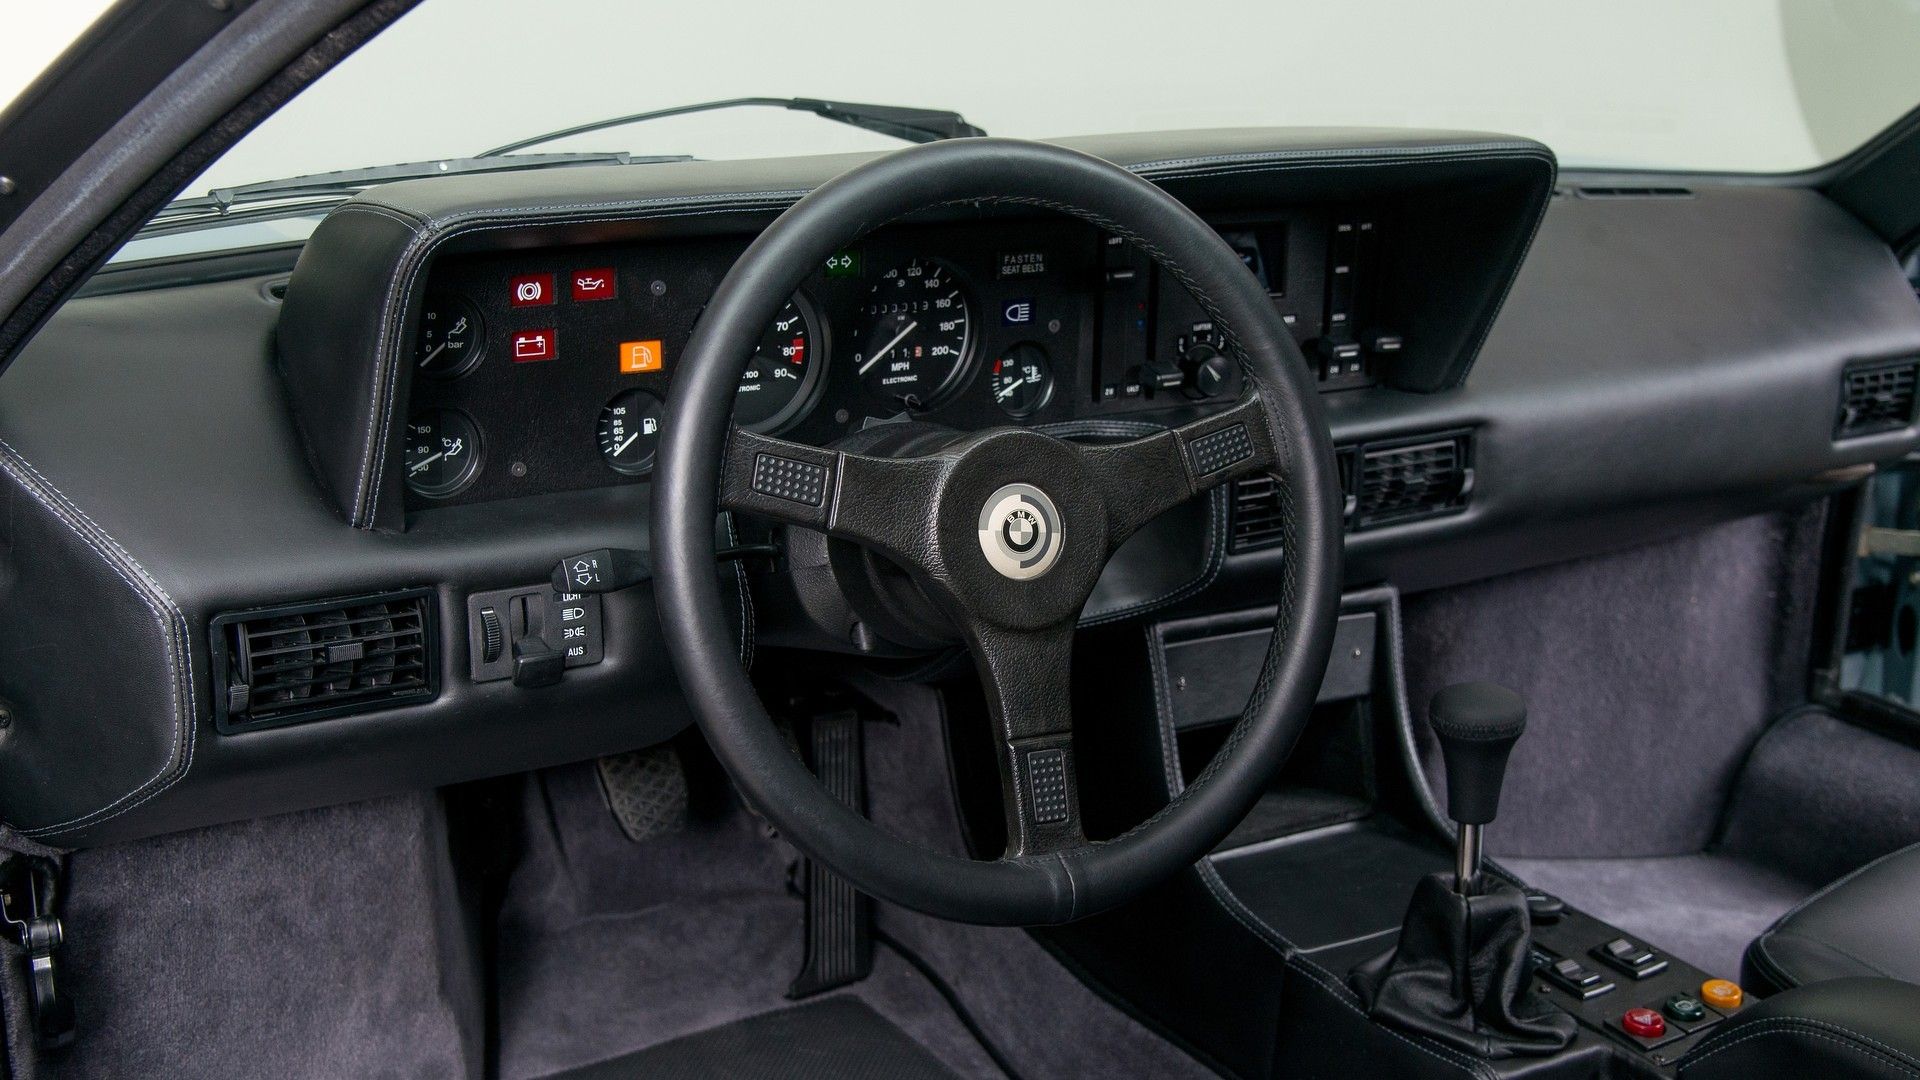 1979 BMW M1 Procar Restored By Canepa